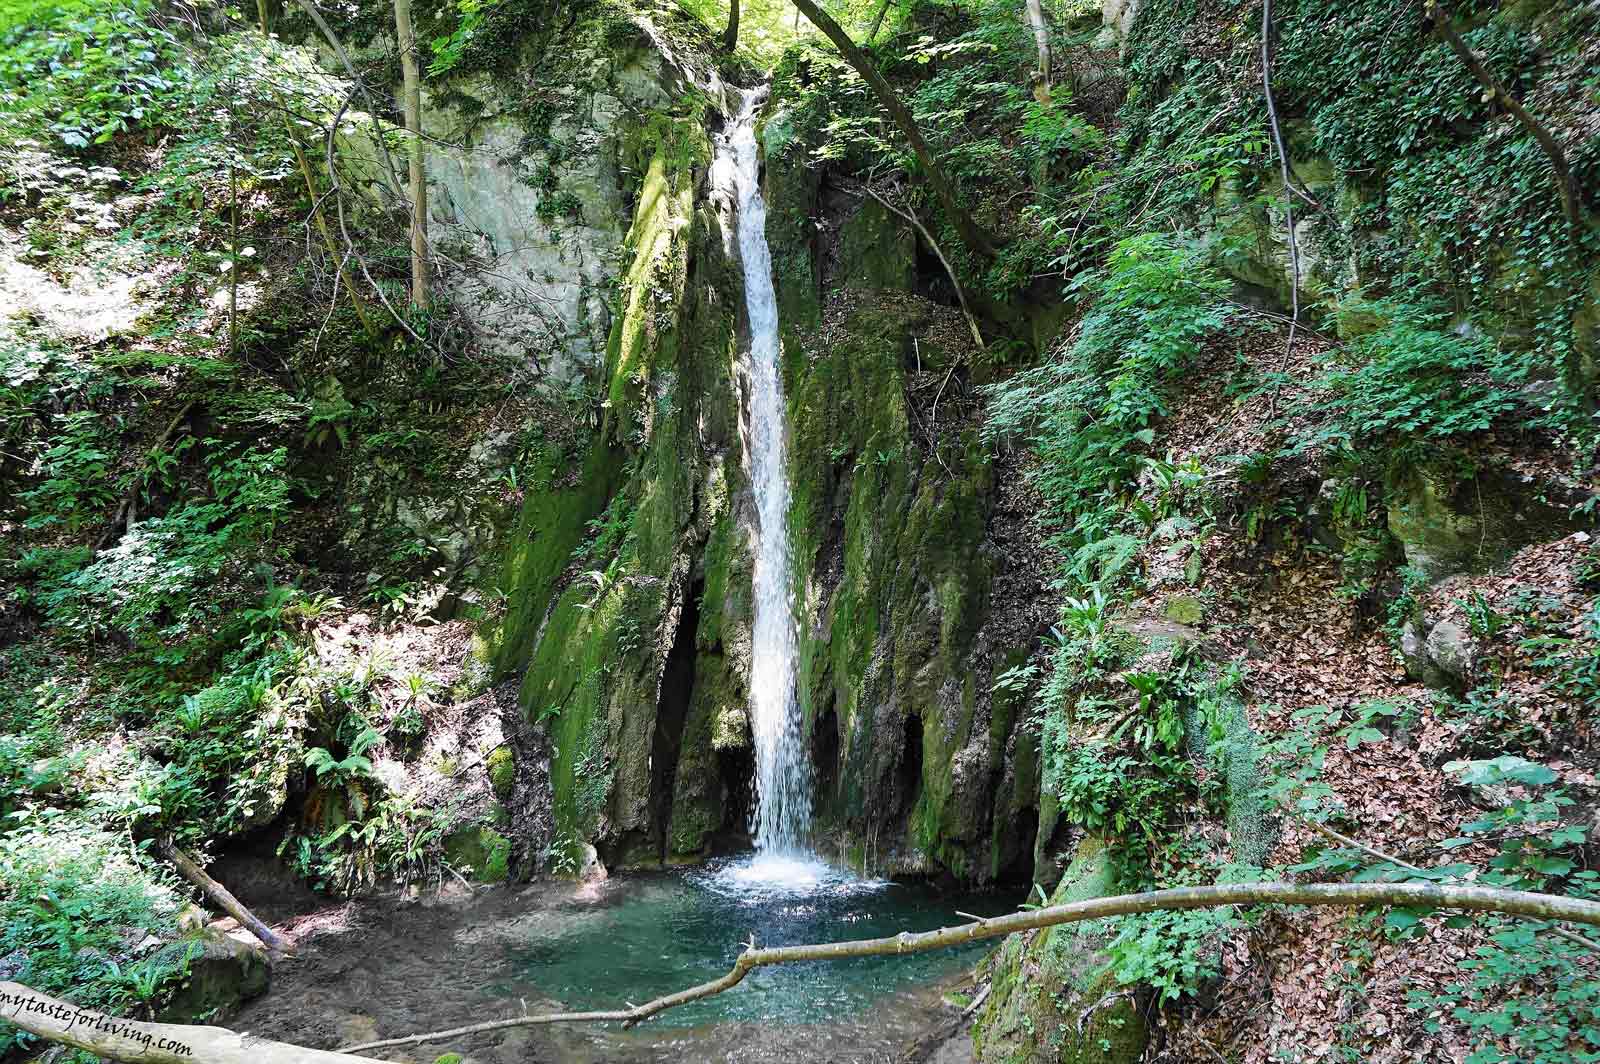 Водопад Сливодолското падало е изключително живописен, а със своите около 50 метра височина е най-високият водопад в Родопите. Намира се на около 30 км от град Пловдив и 15 км от град Асеновград, по течението на река Сливов дол и на територията на резерват „Червената стена“.